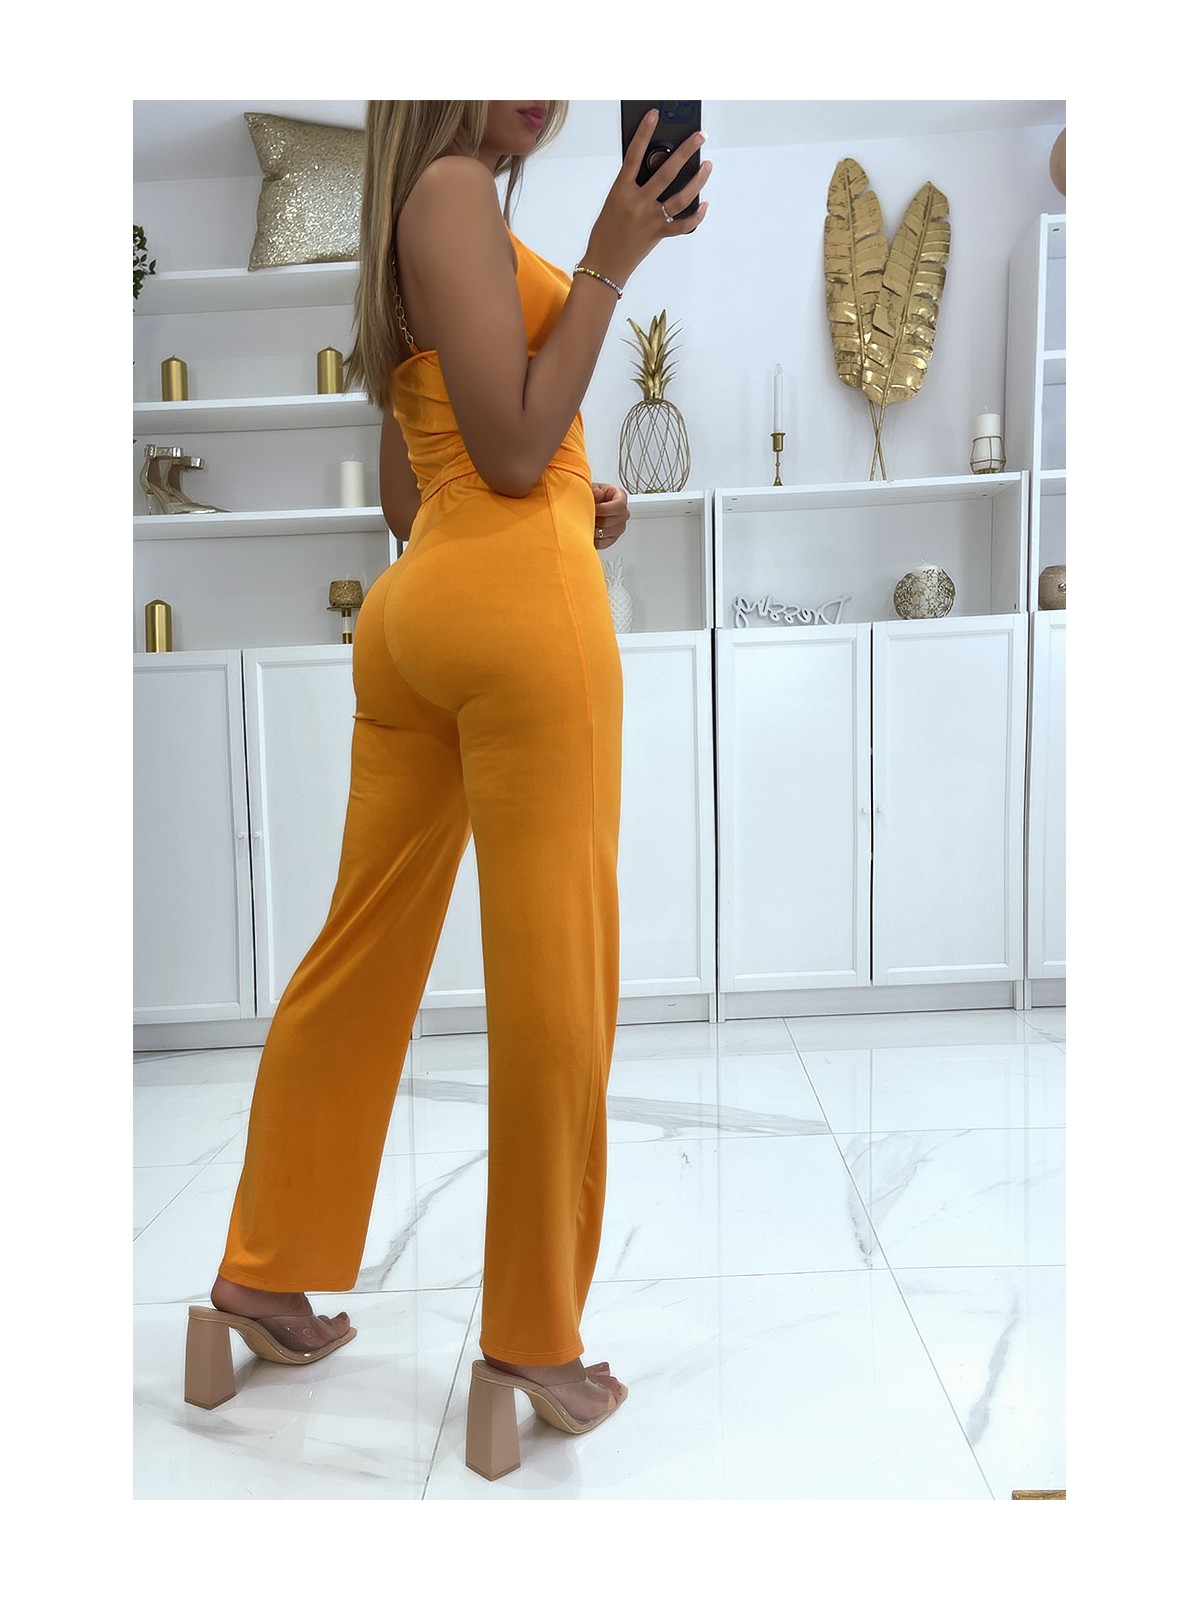 Combinaison pantalon orange à bretelles en chaines dorées et ceinture à la taille - 4